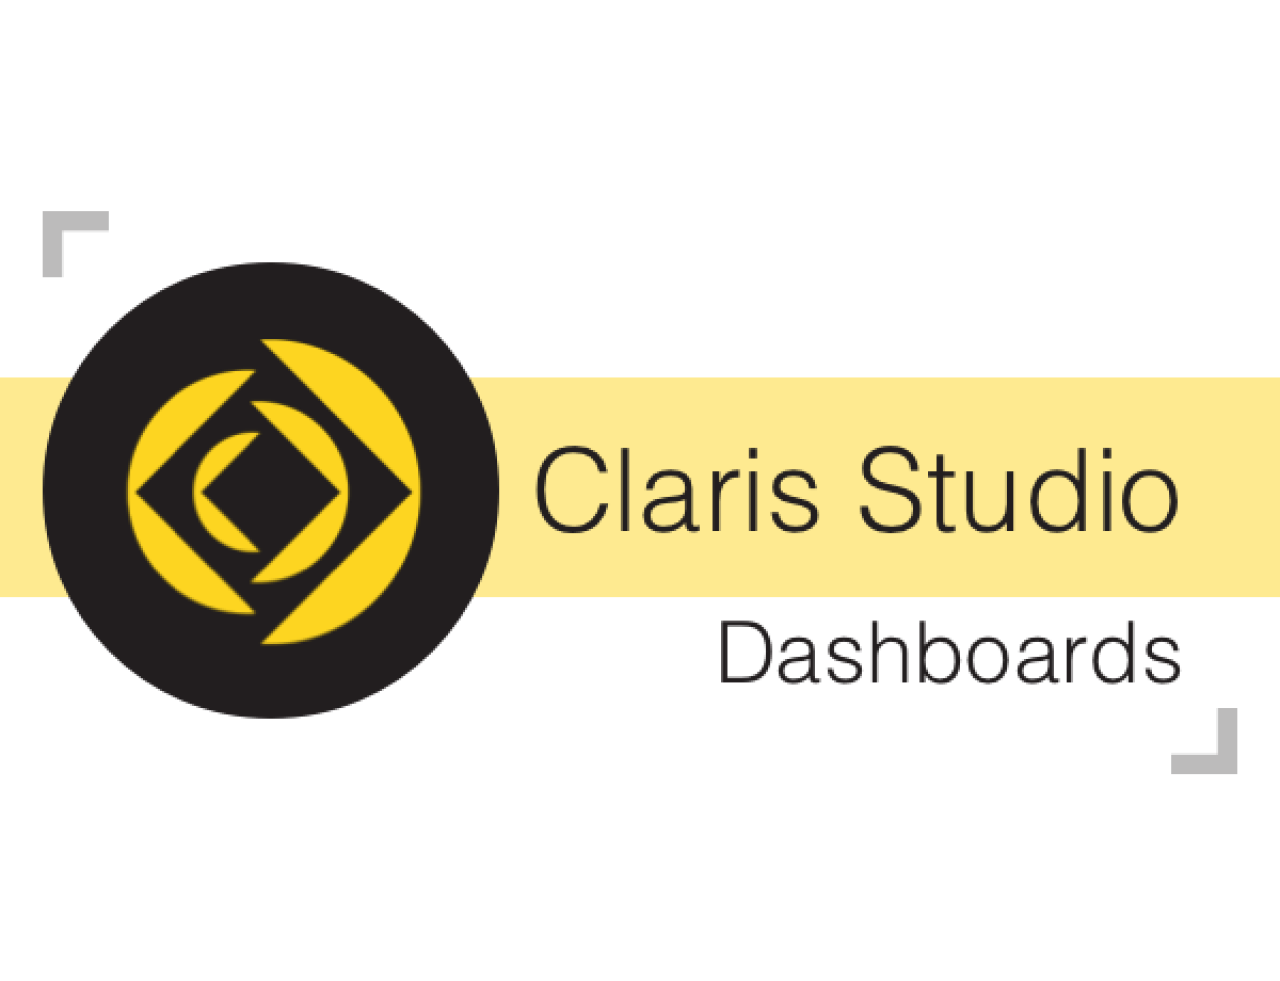 claris studio dashboards.